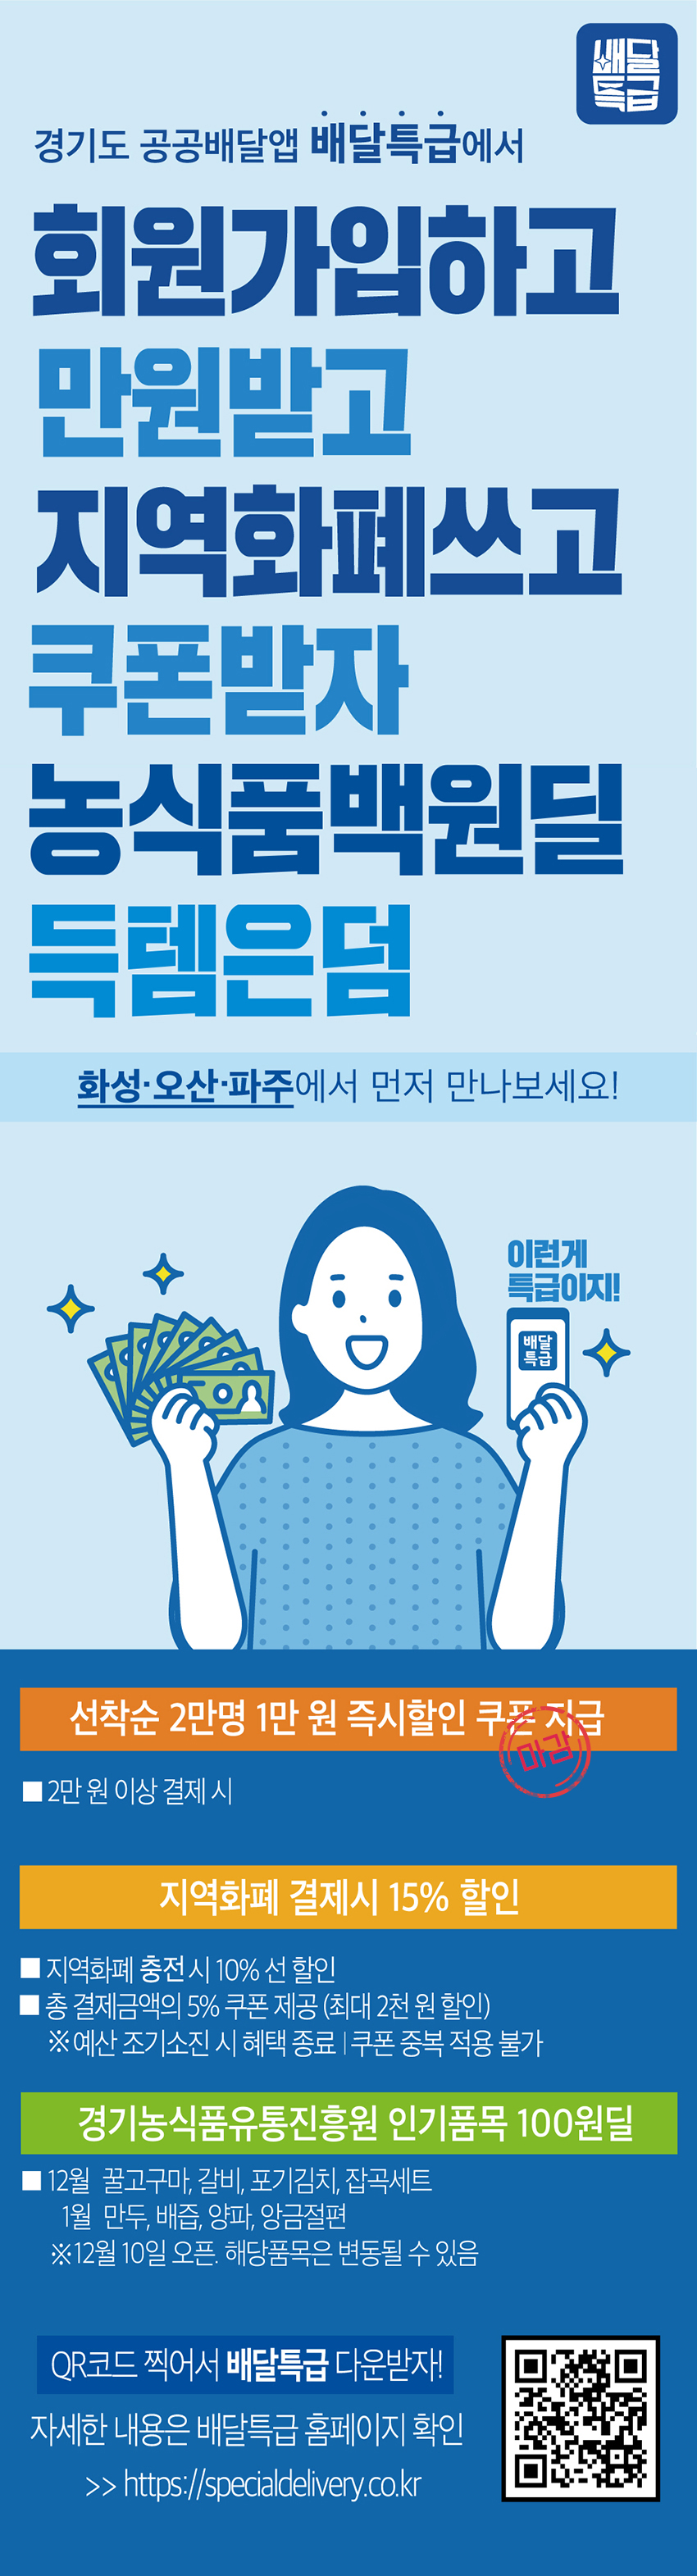  경기도 시각장애인 정보접근권 보장 정책토론회 